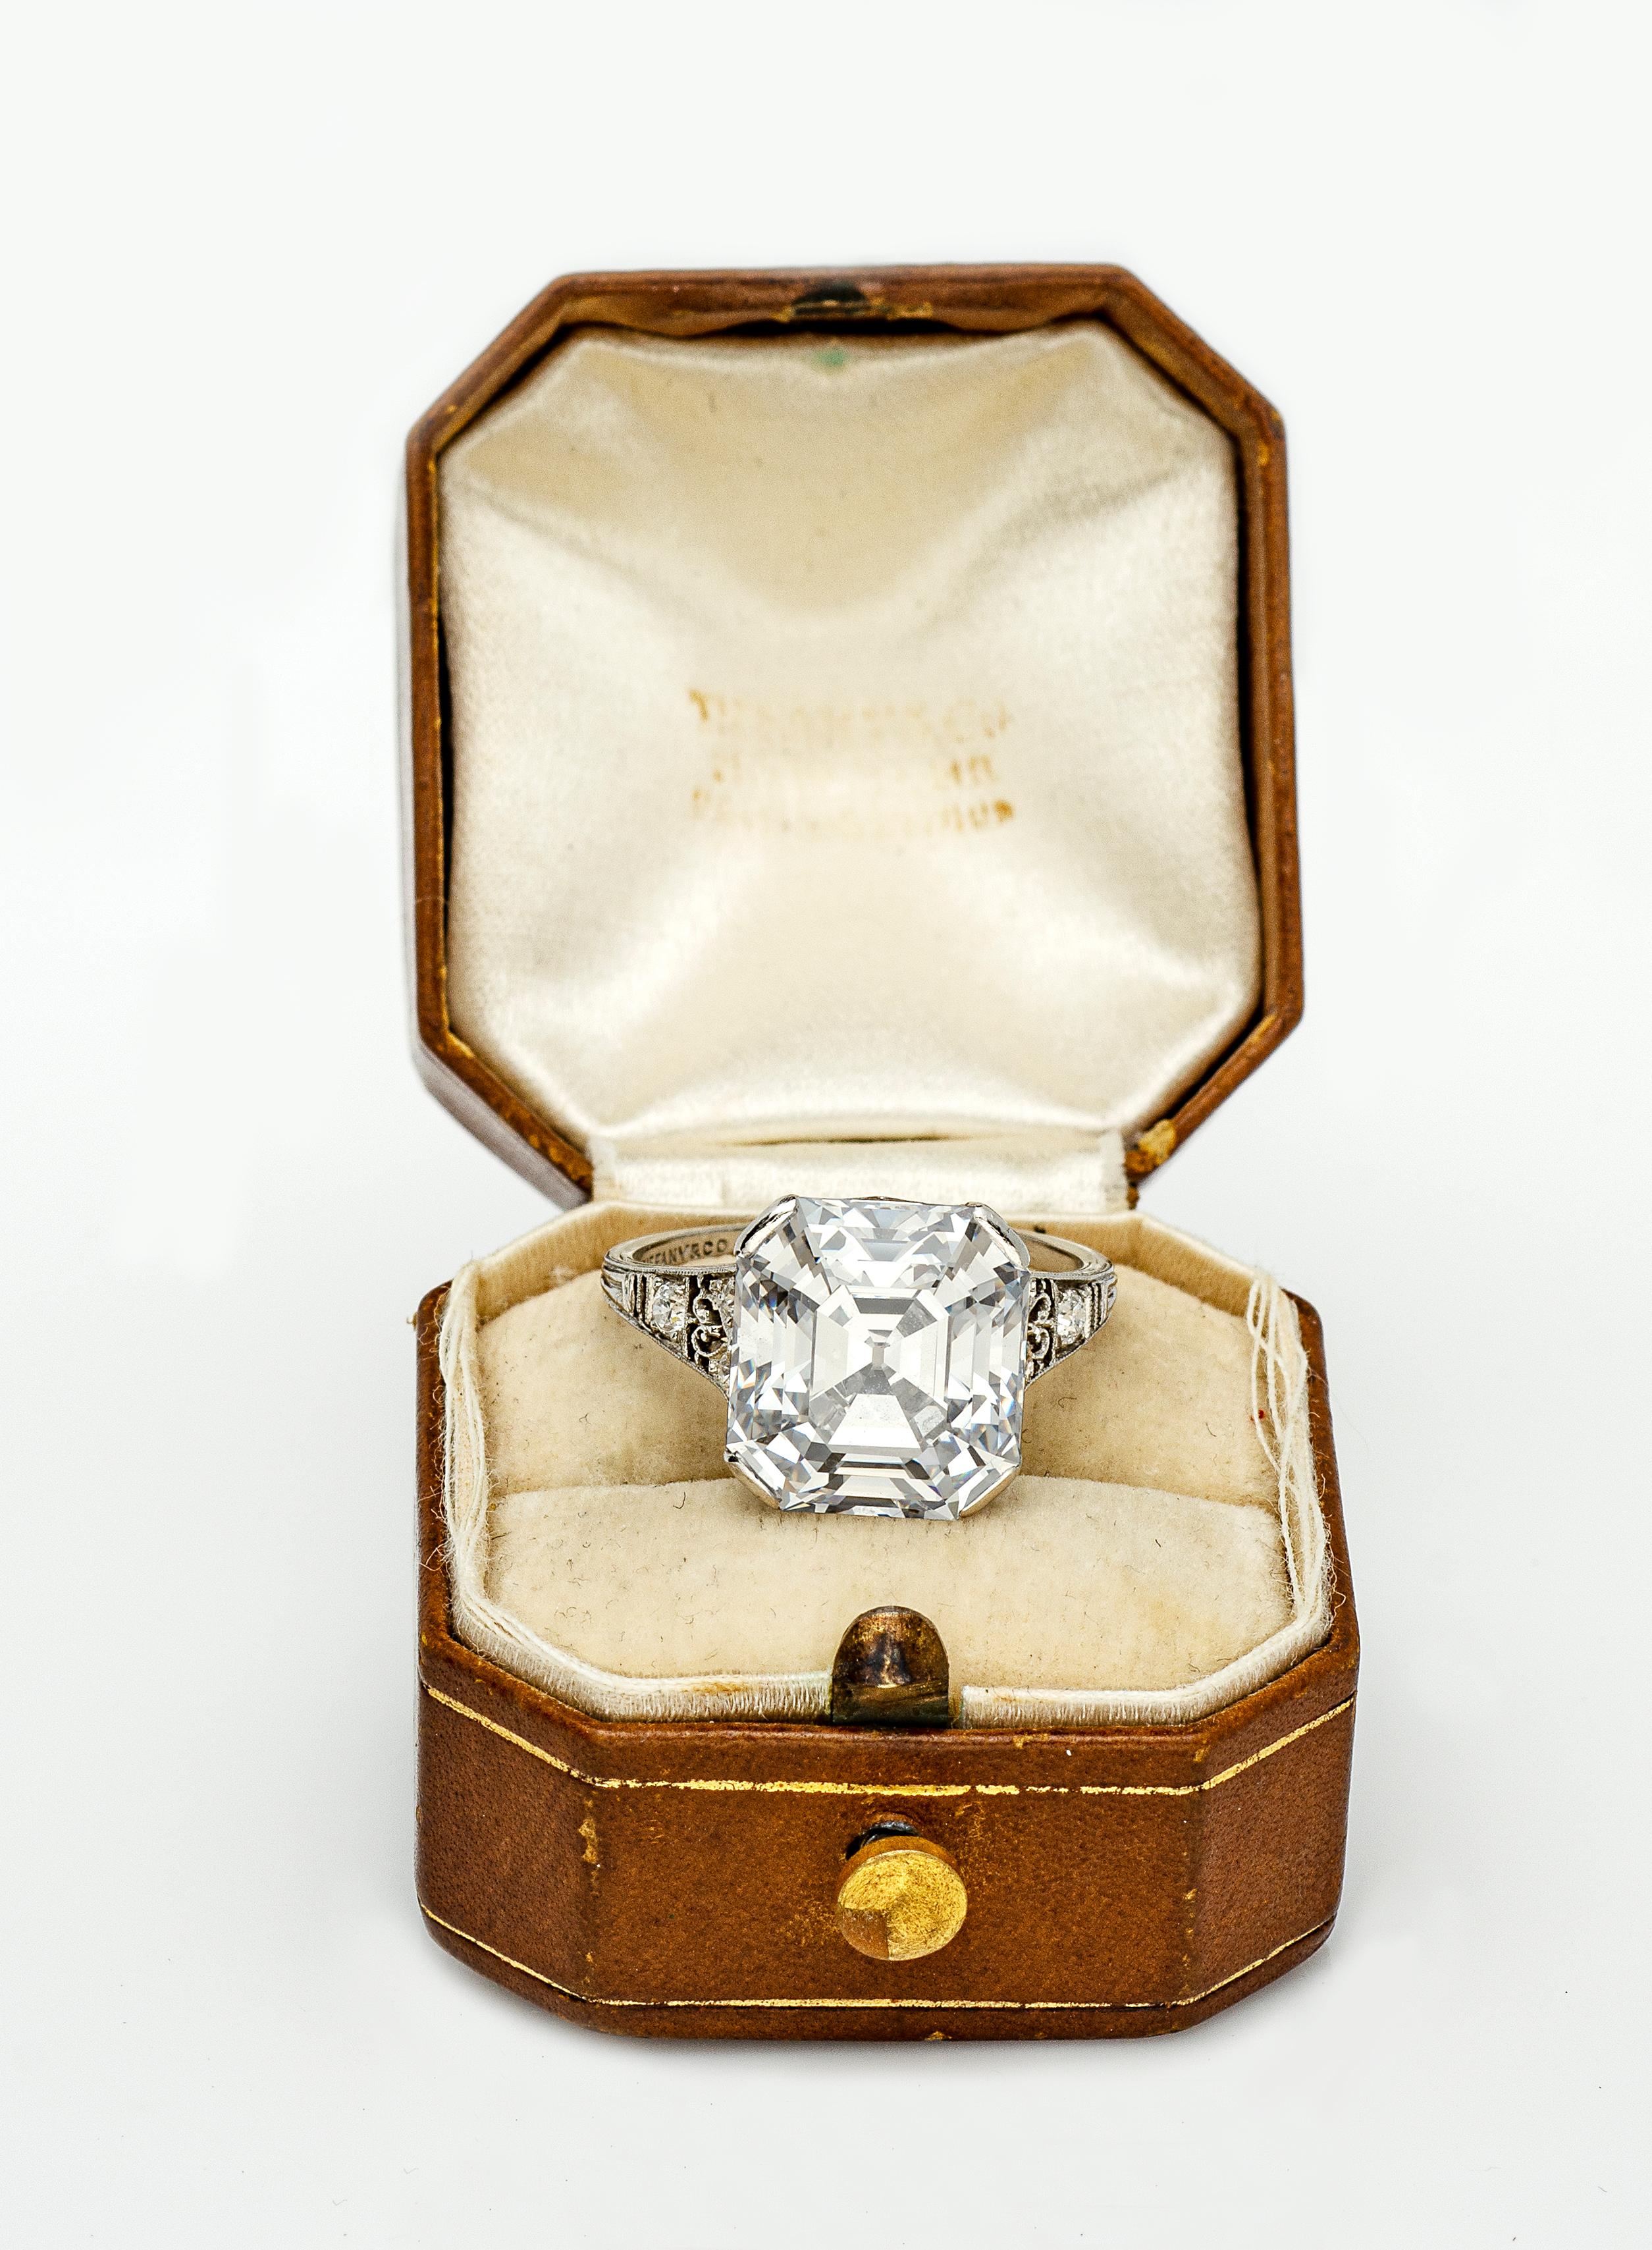 tiffany asscher cut diamond ring